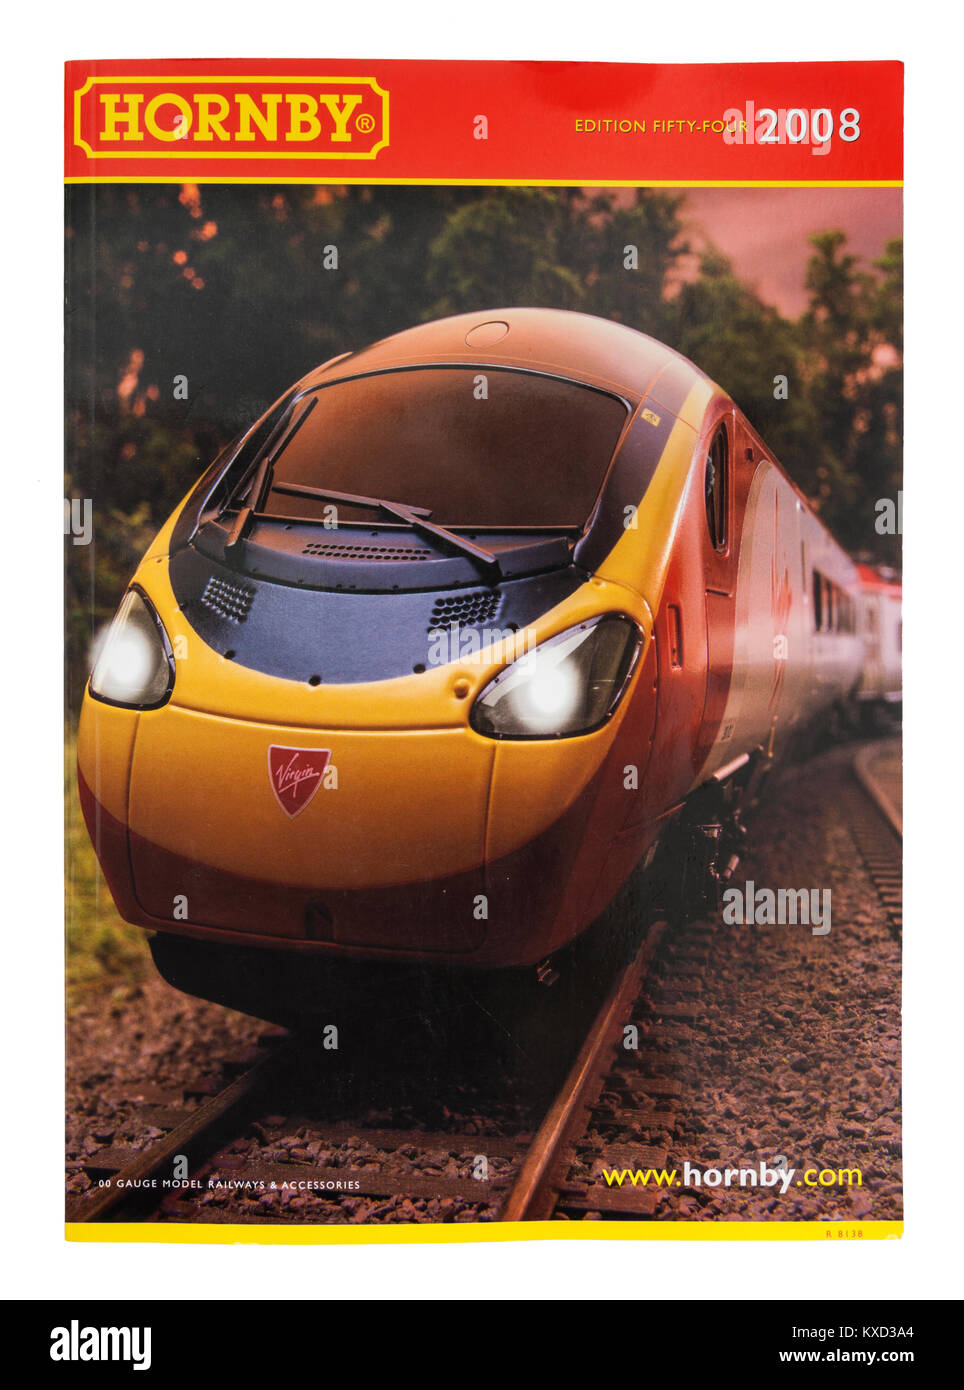 Hornby Modellbahn Katalog von 2008 (Ausgabe 54) mit Virgin Trains Lokomotive auf der vorderen Abdeckung Stockfoto